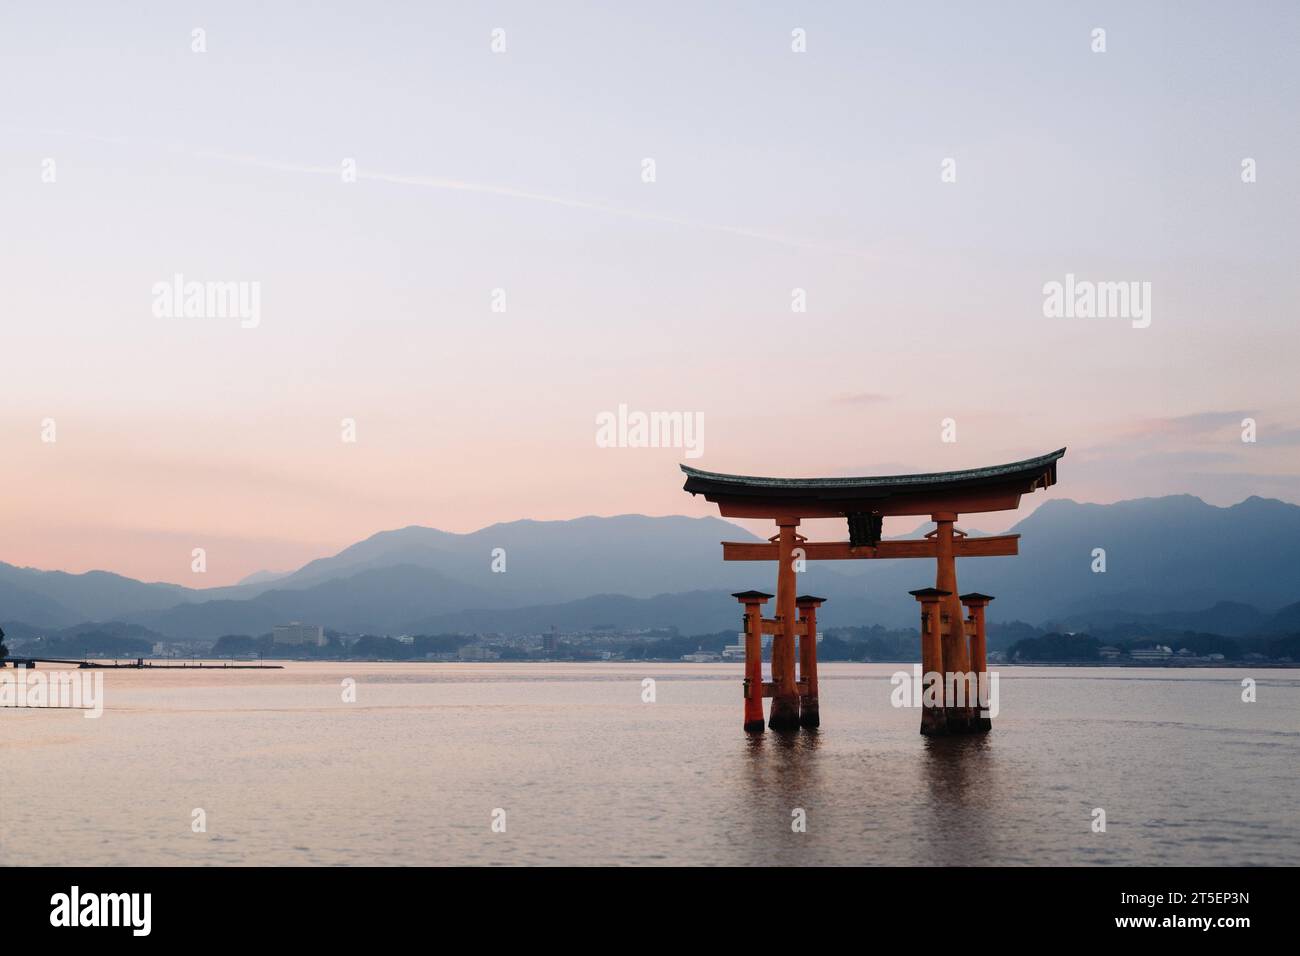 The Itsukushima Jinja Otorii (Grand Torii Gate) at sunset, Miyajima Island, Hiroshima, Japan Stock Photo